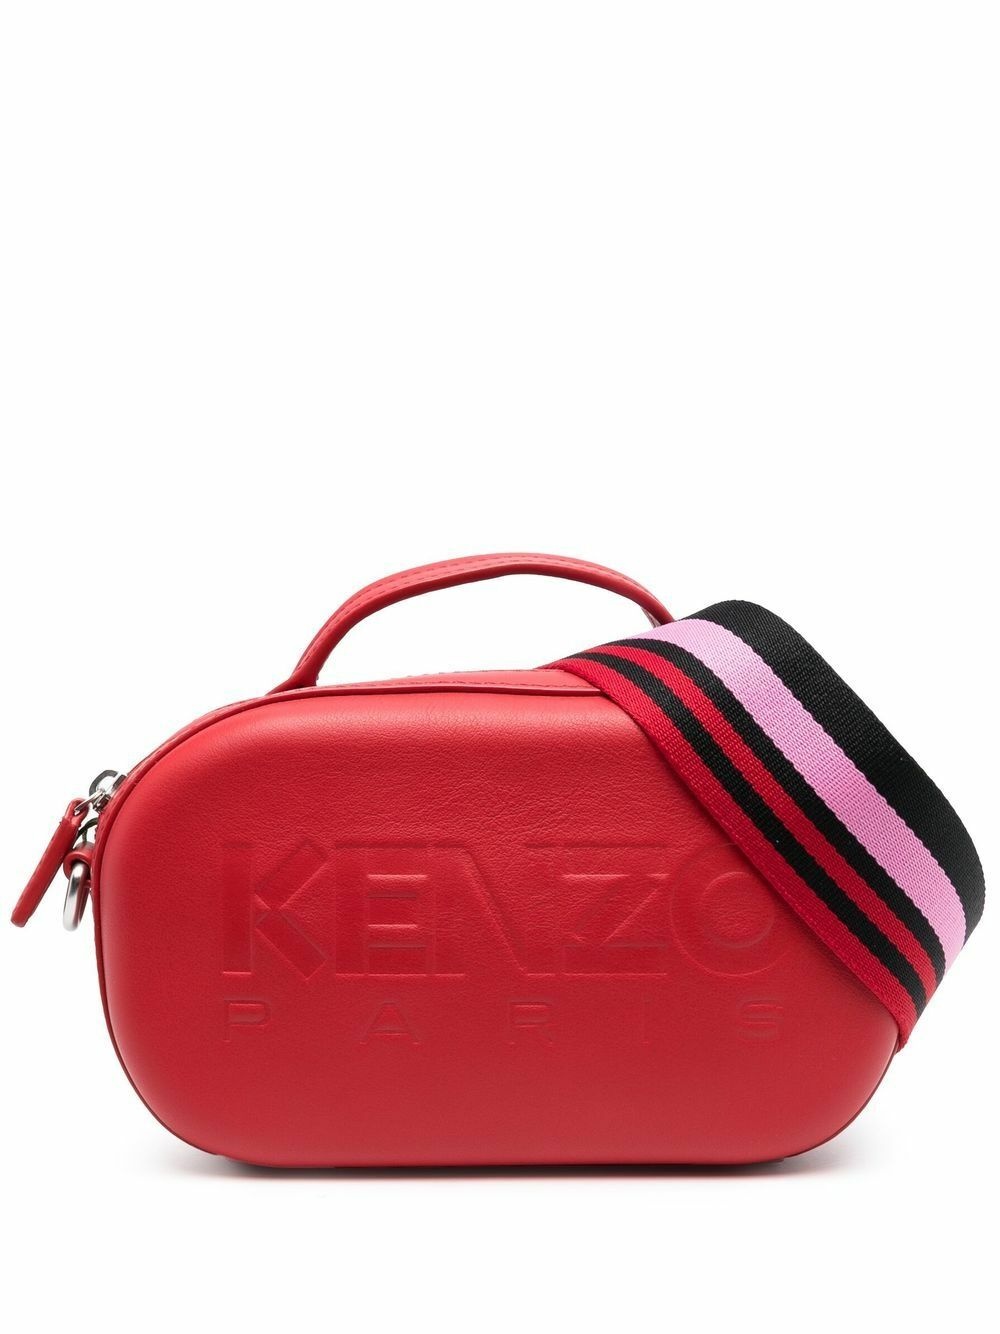 KENZO - Small Leather Crossbody Bag Kenzo